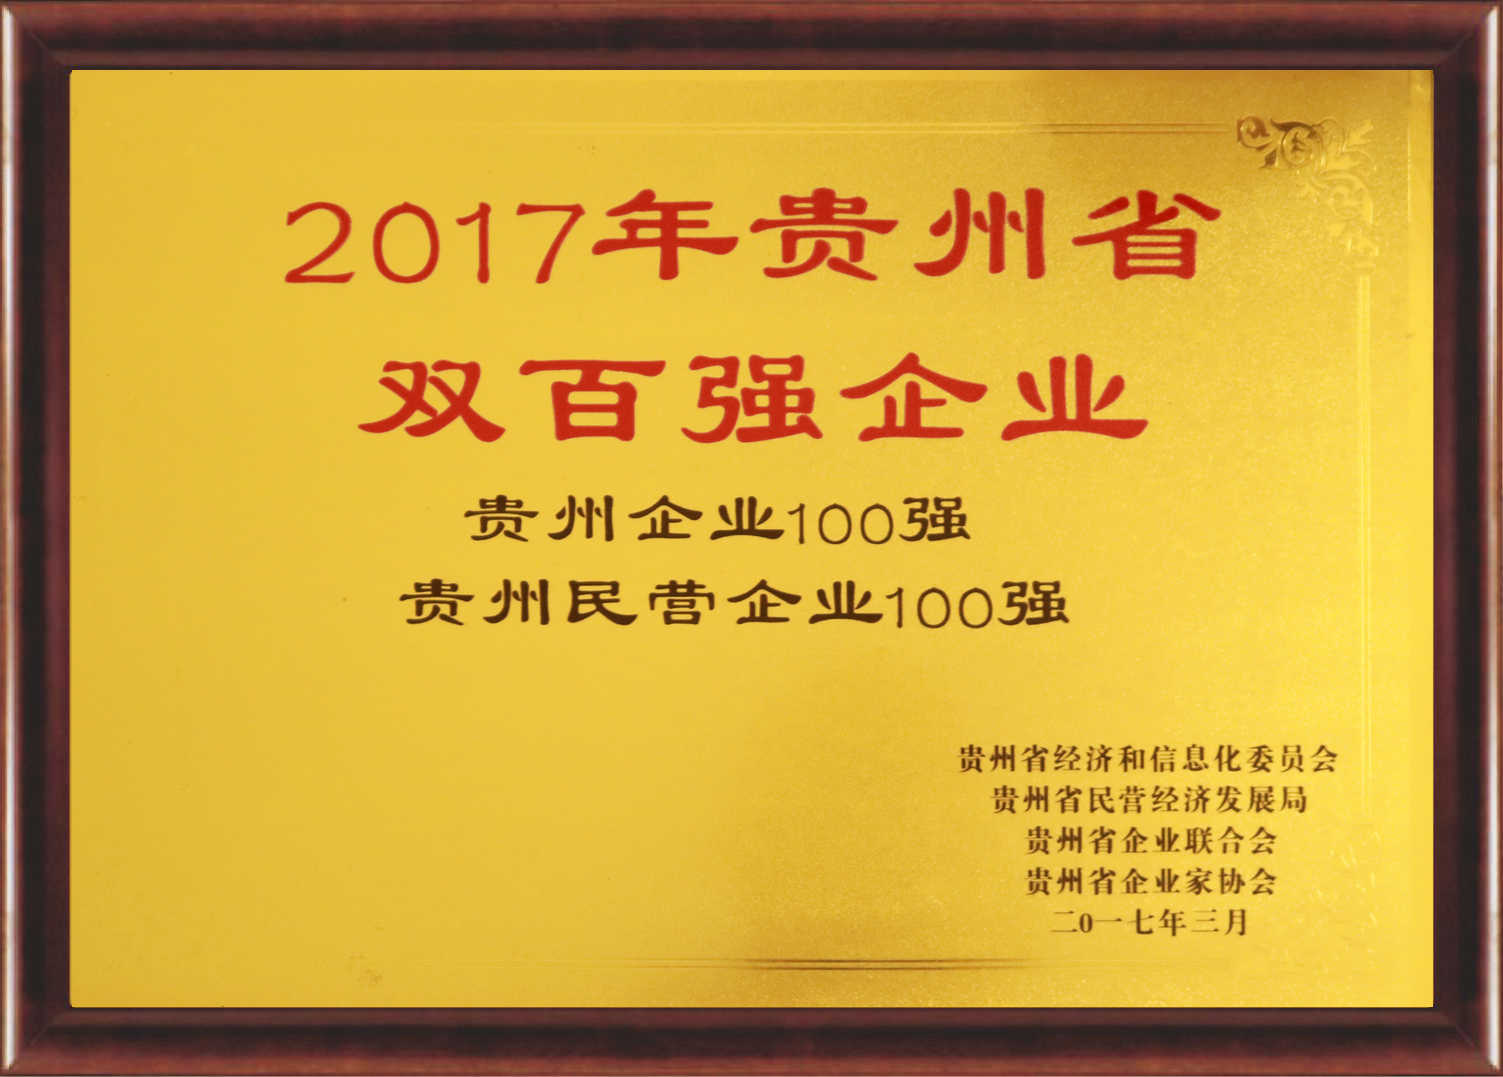 2017年貴州省雙百強企業